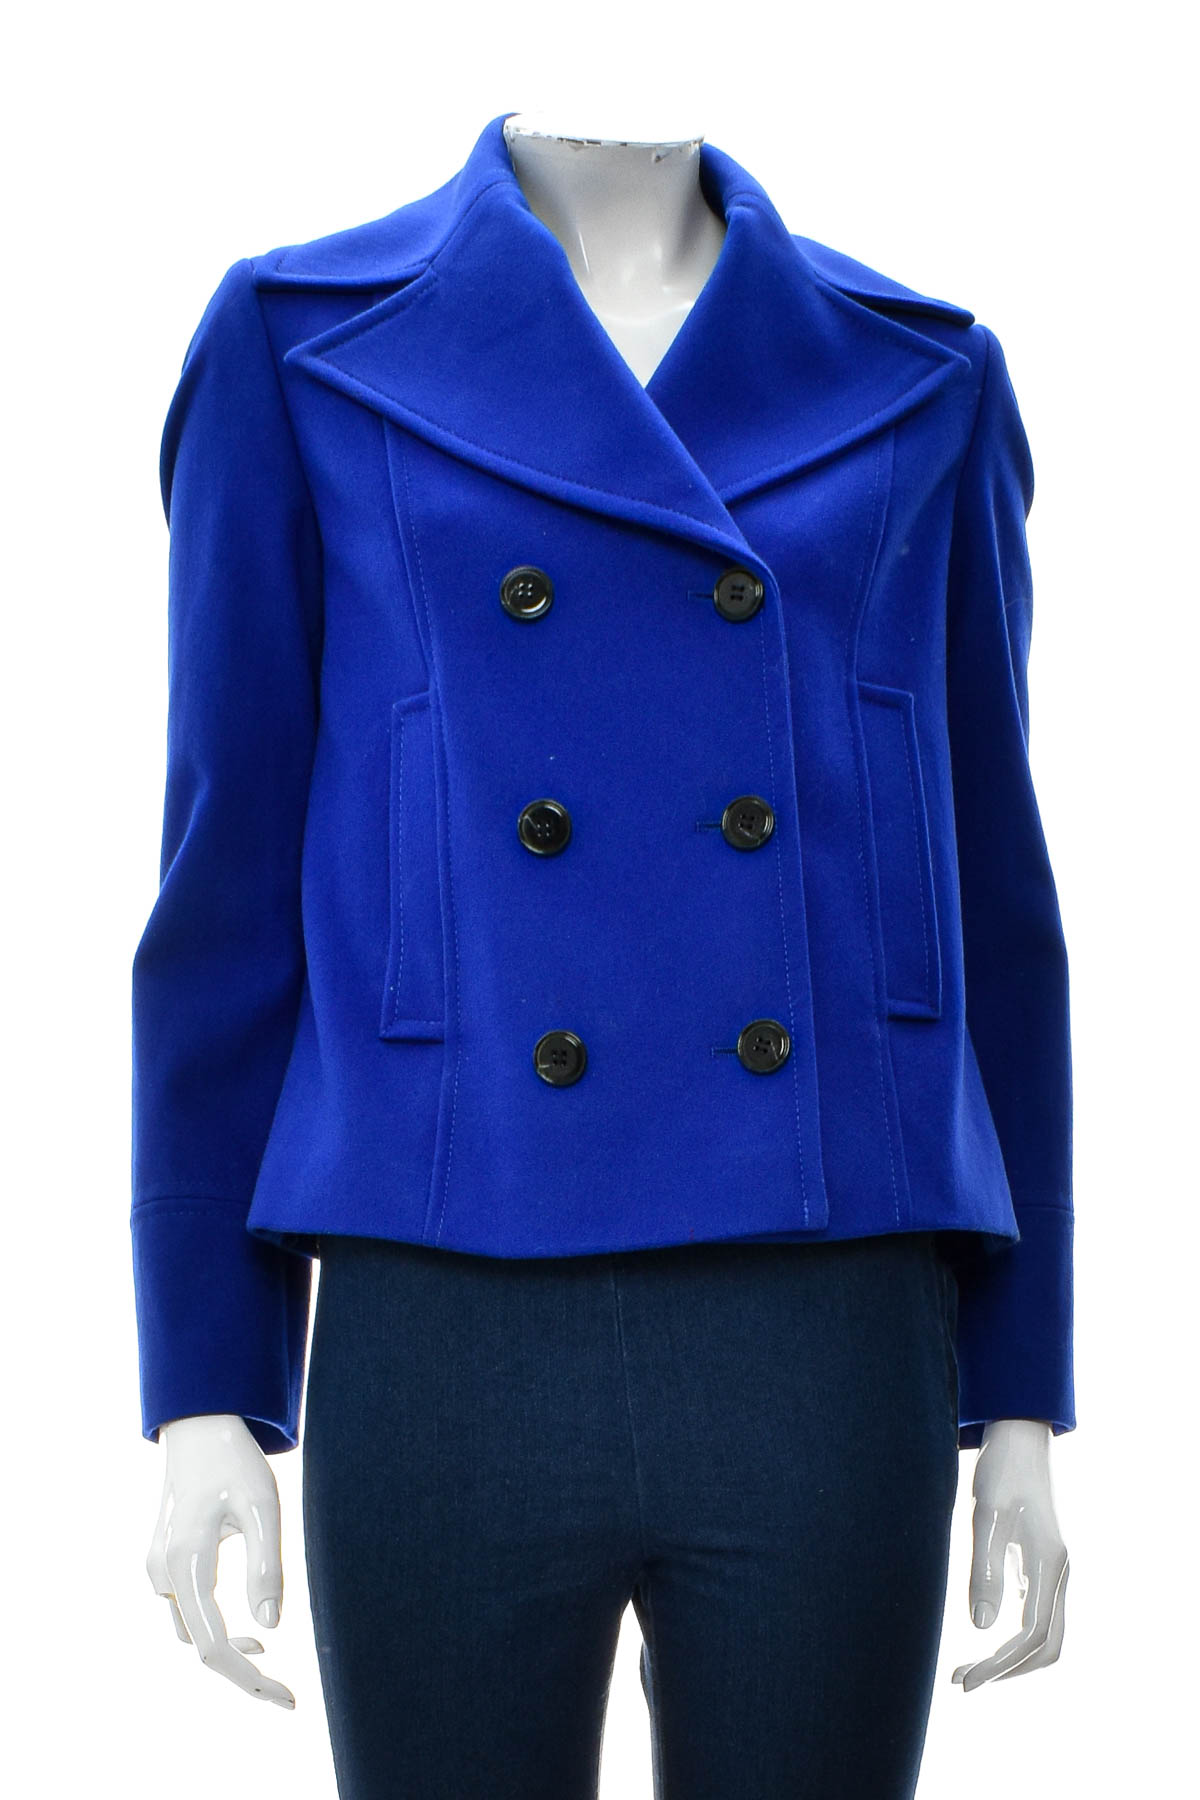 Women's coat - Max&Co. - 0